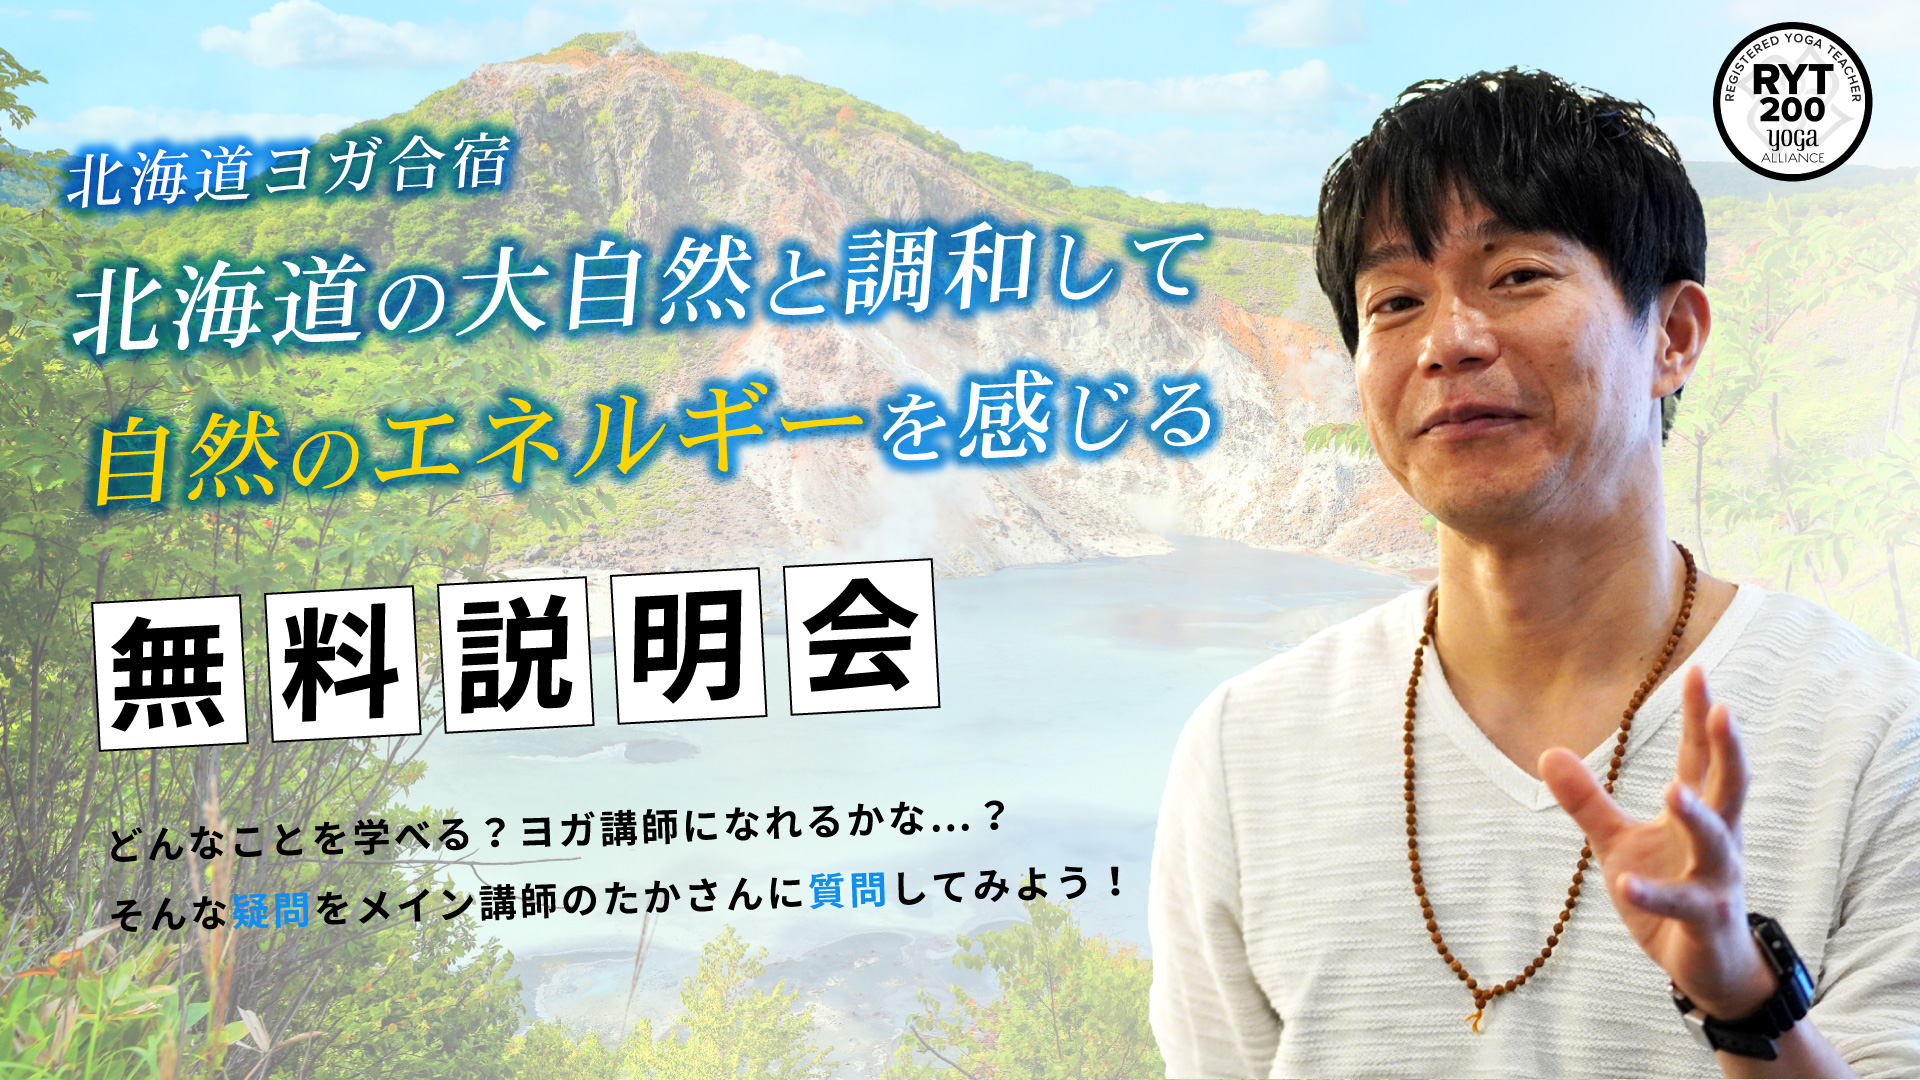 北海道ヨガ合宿「北海道の大自然のエネルギーを感じる」無料説明会